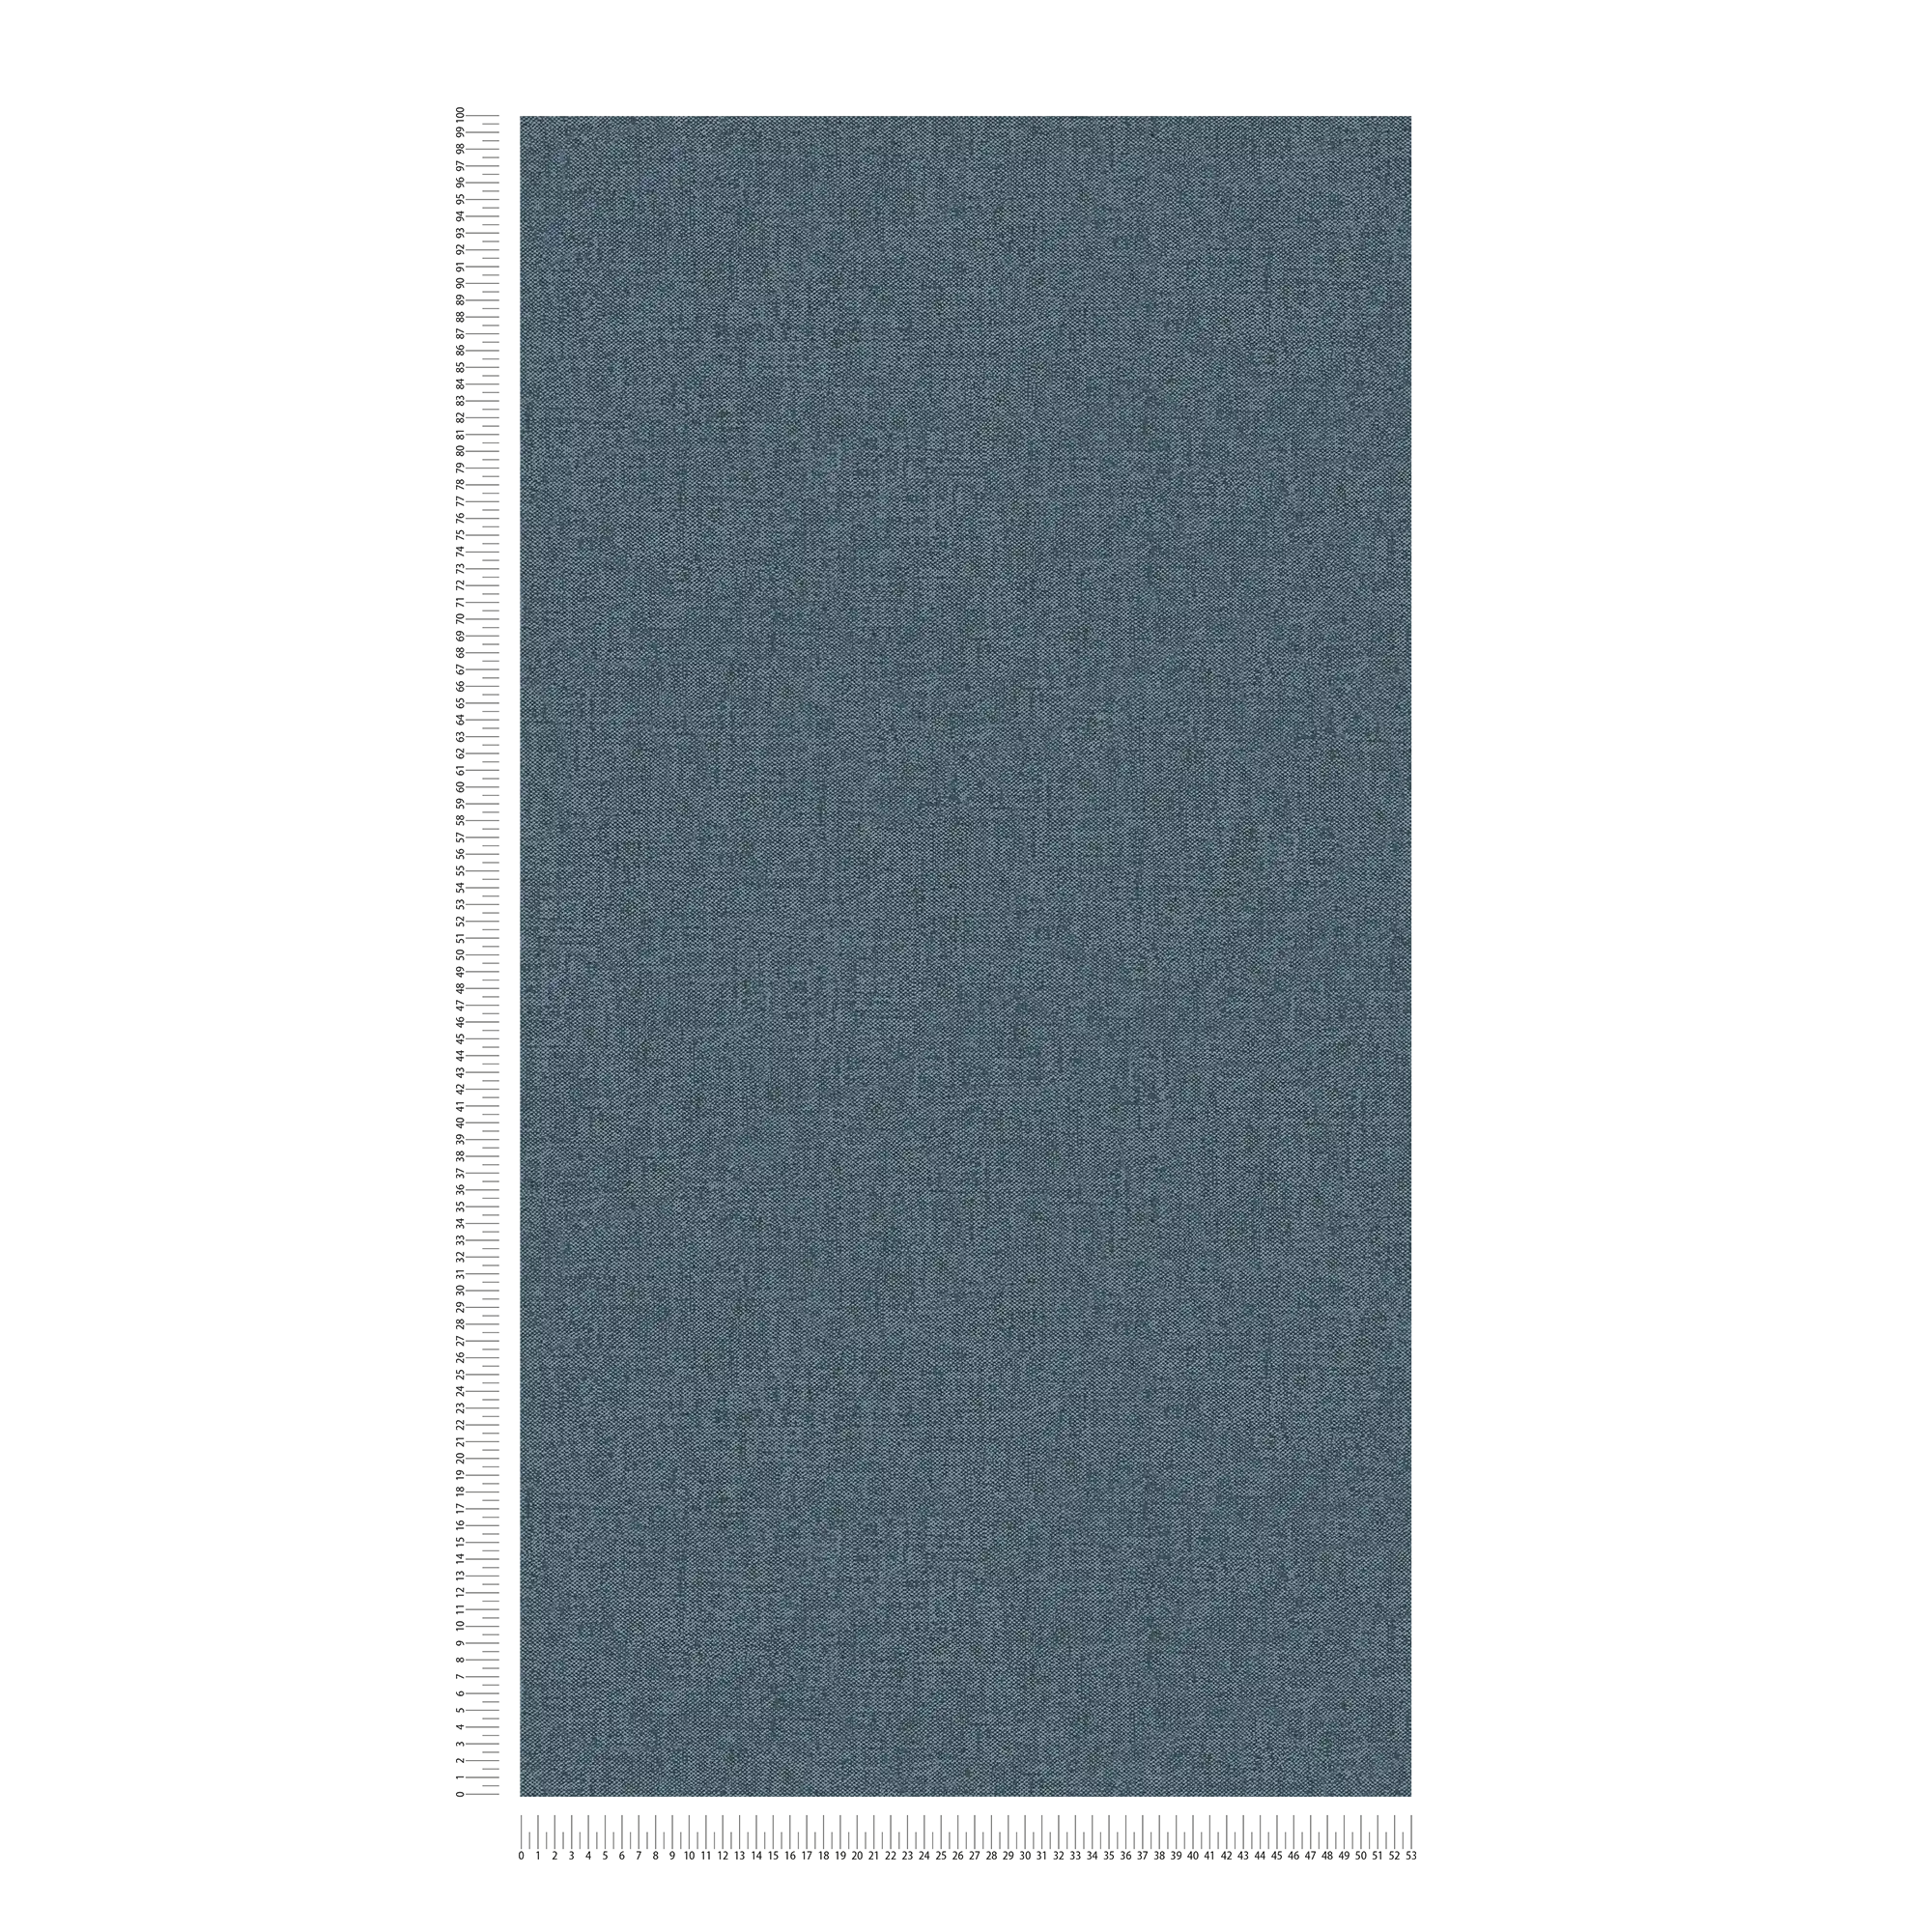             Papier peint aspect textile Jeans bleu avec structure tissée - bleu
        